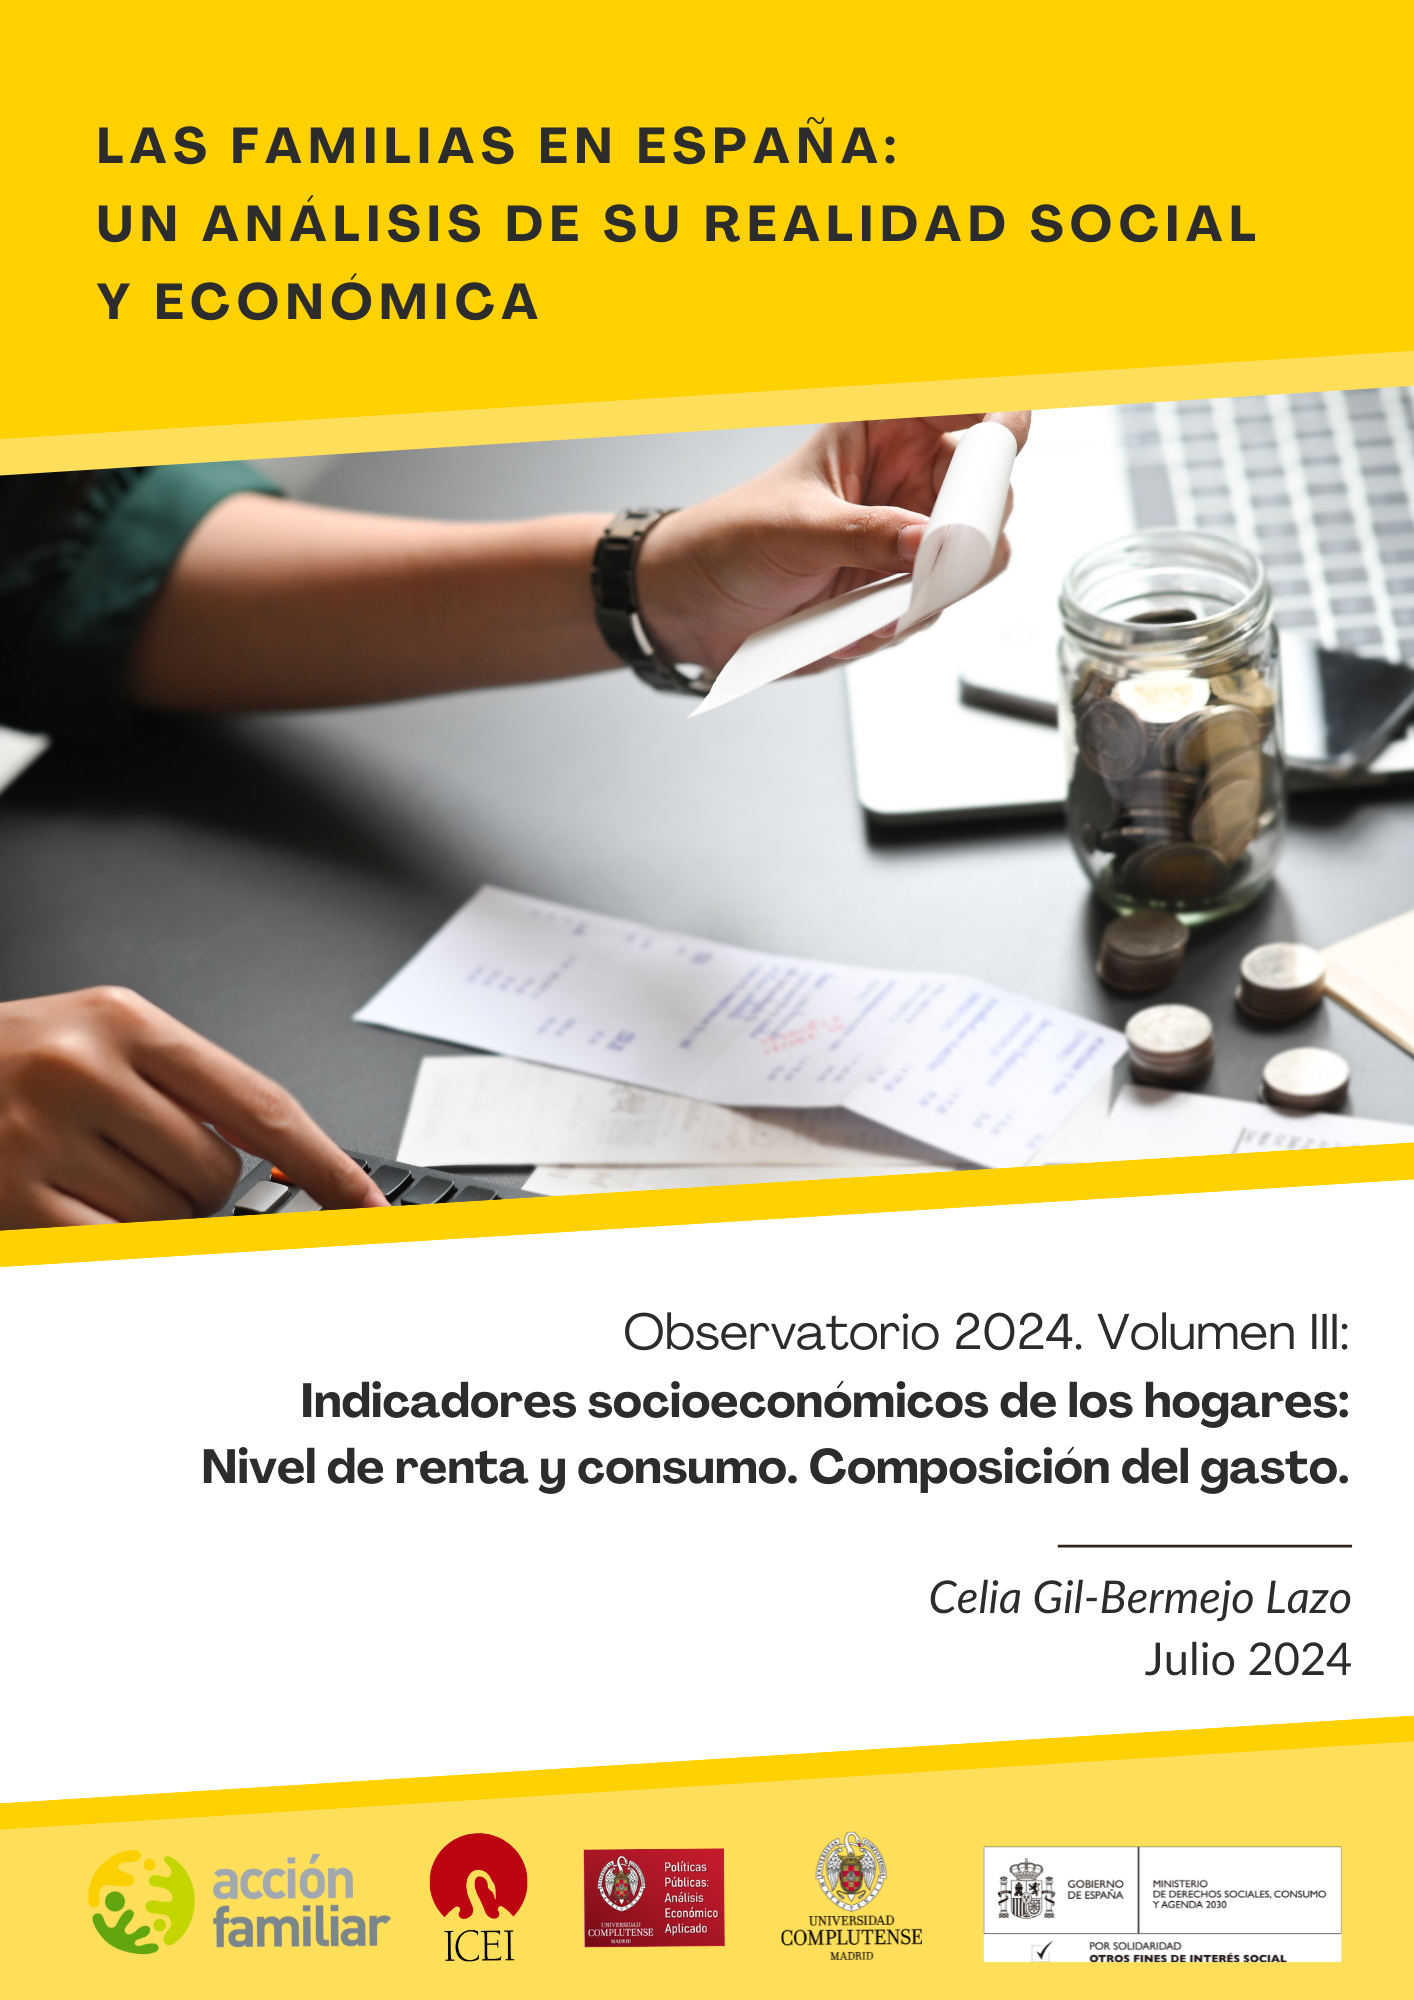 Observatorio de familias. Volumen III: Indicadores socioeconómicos de los hogares: Nivel de renta y consumo de los hogares. Composición del gasto.